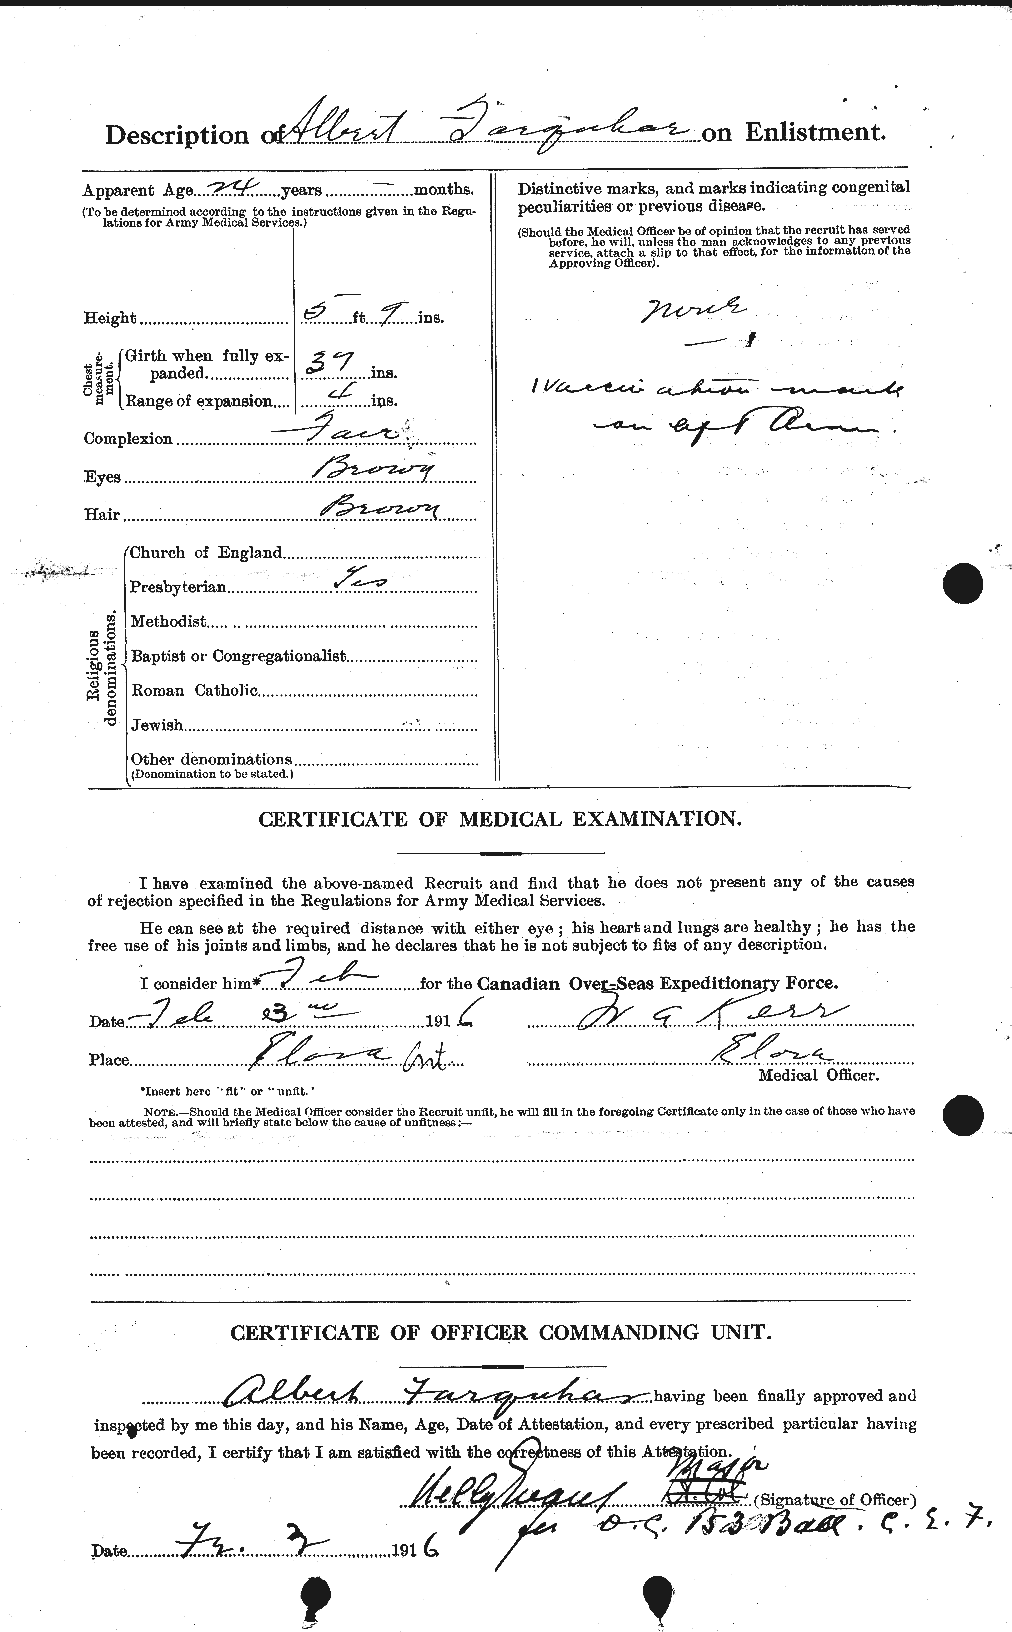 Dossiers du Personnel de la Première Guerre mondiale - CEC 318756b